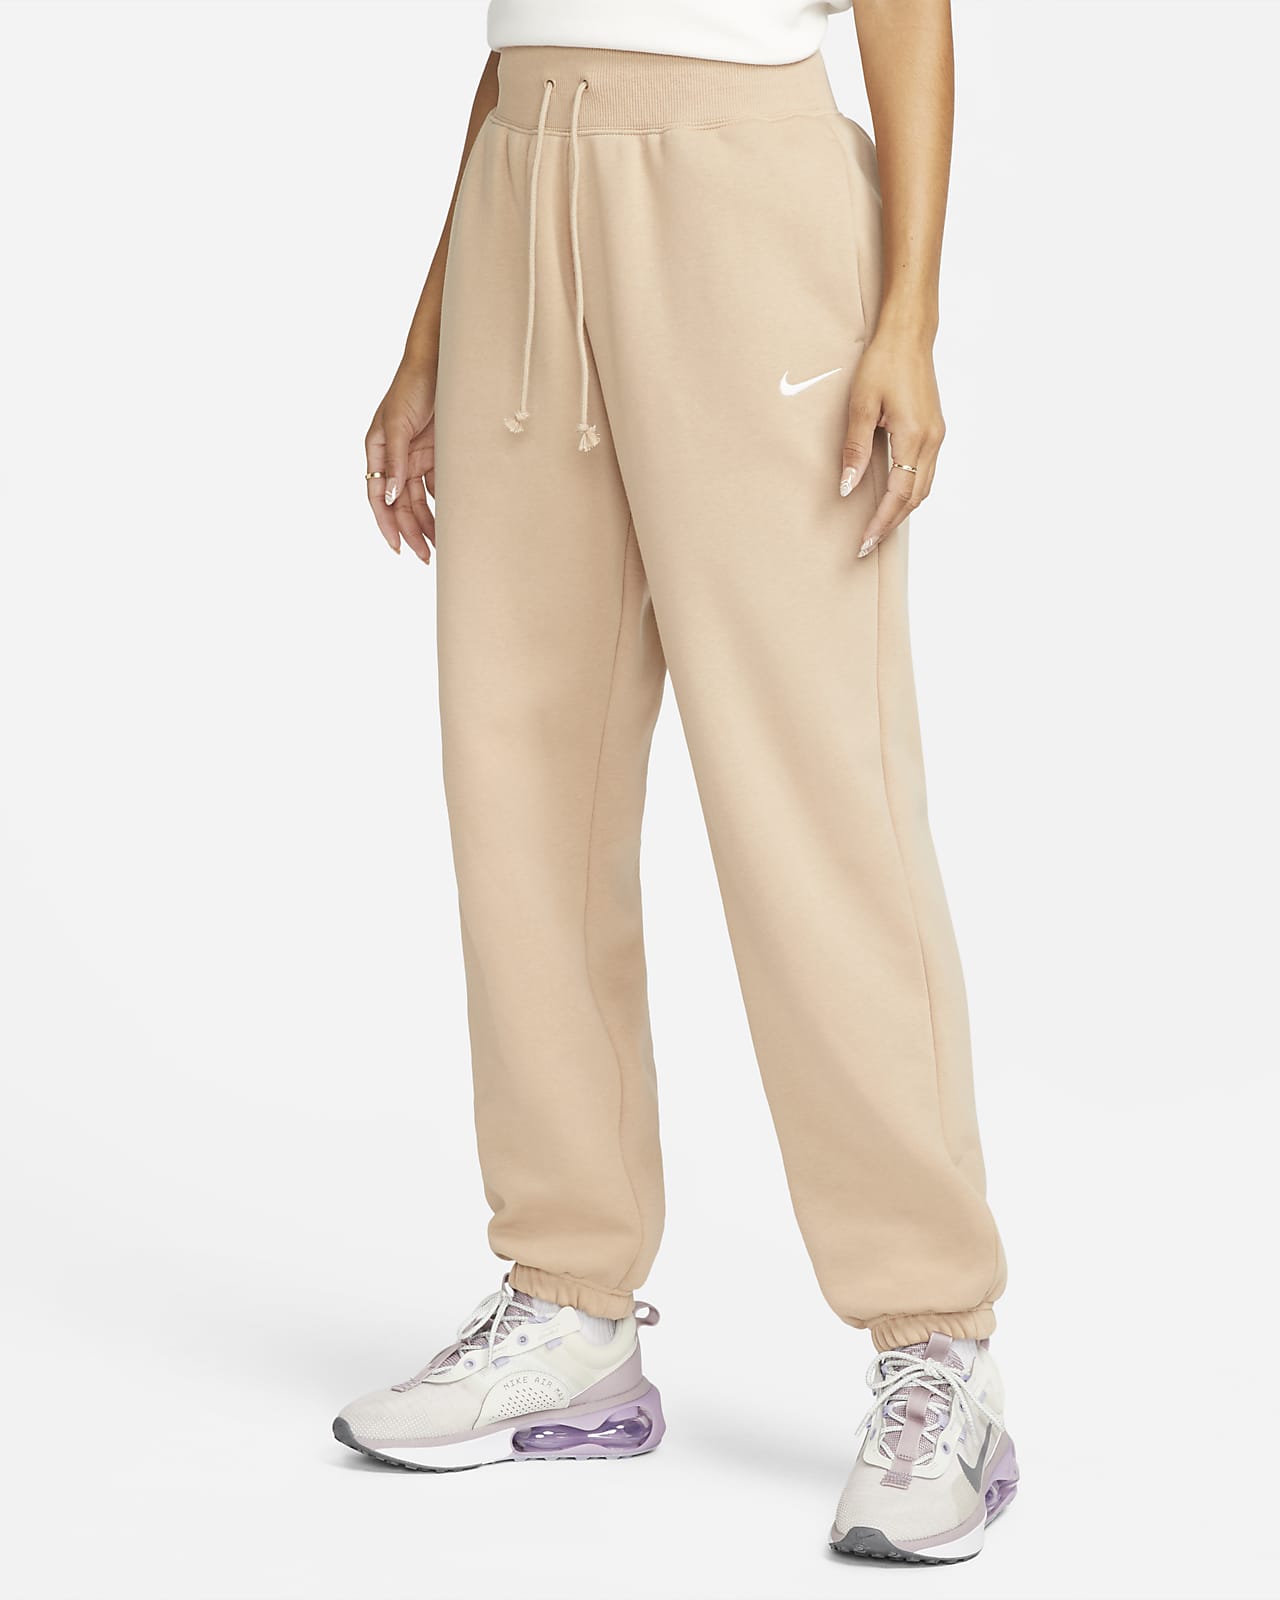 Nike Sportswear Phoenix Fleece Jogger oversize de talle alto - Mujer